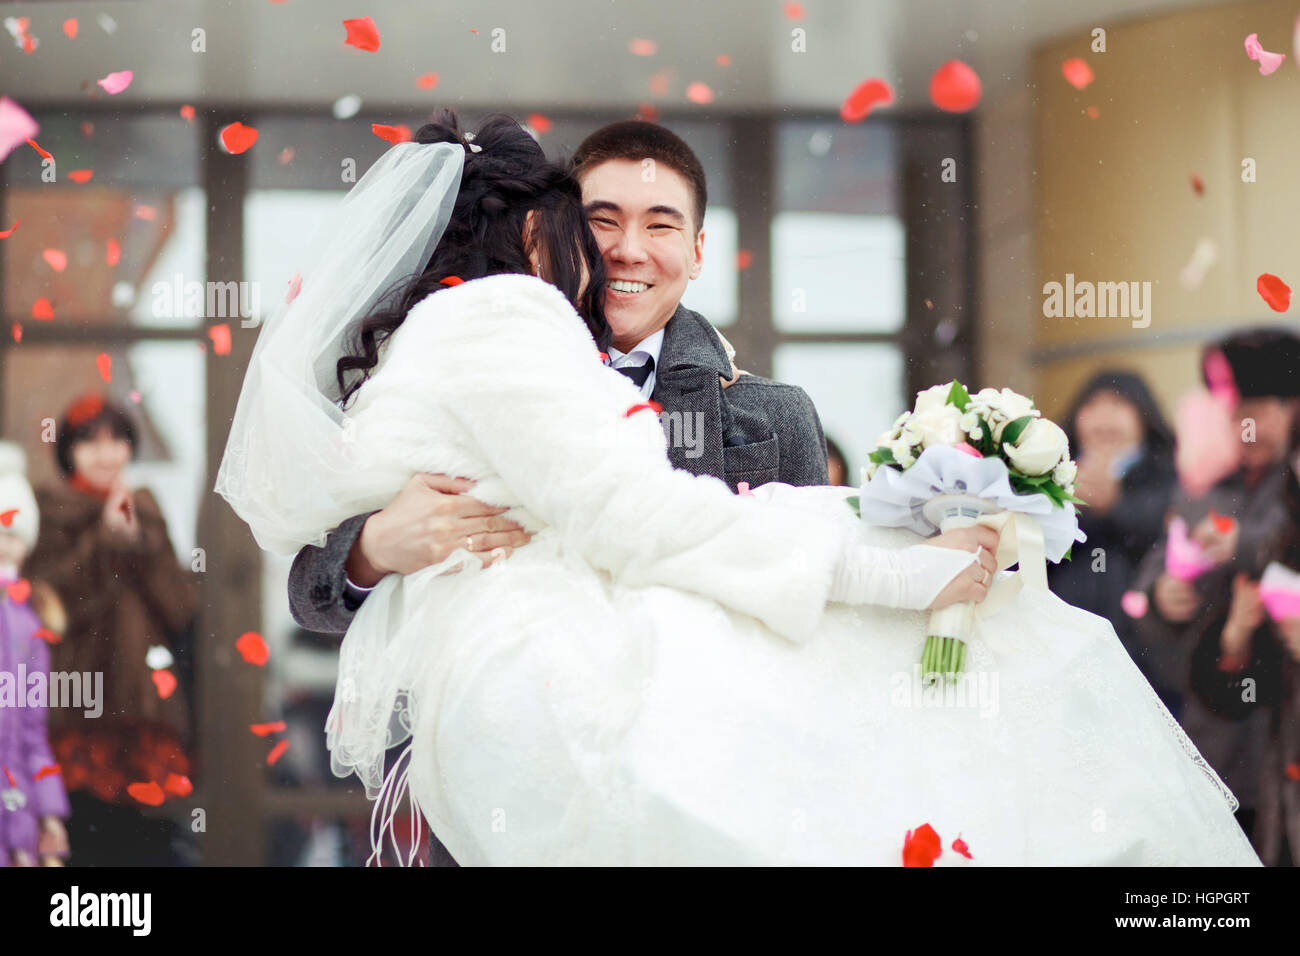 Lo sposo sposa che porta nel suo stemma, la folla getta petali e riso. Felice matrimonio. Foto Stock